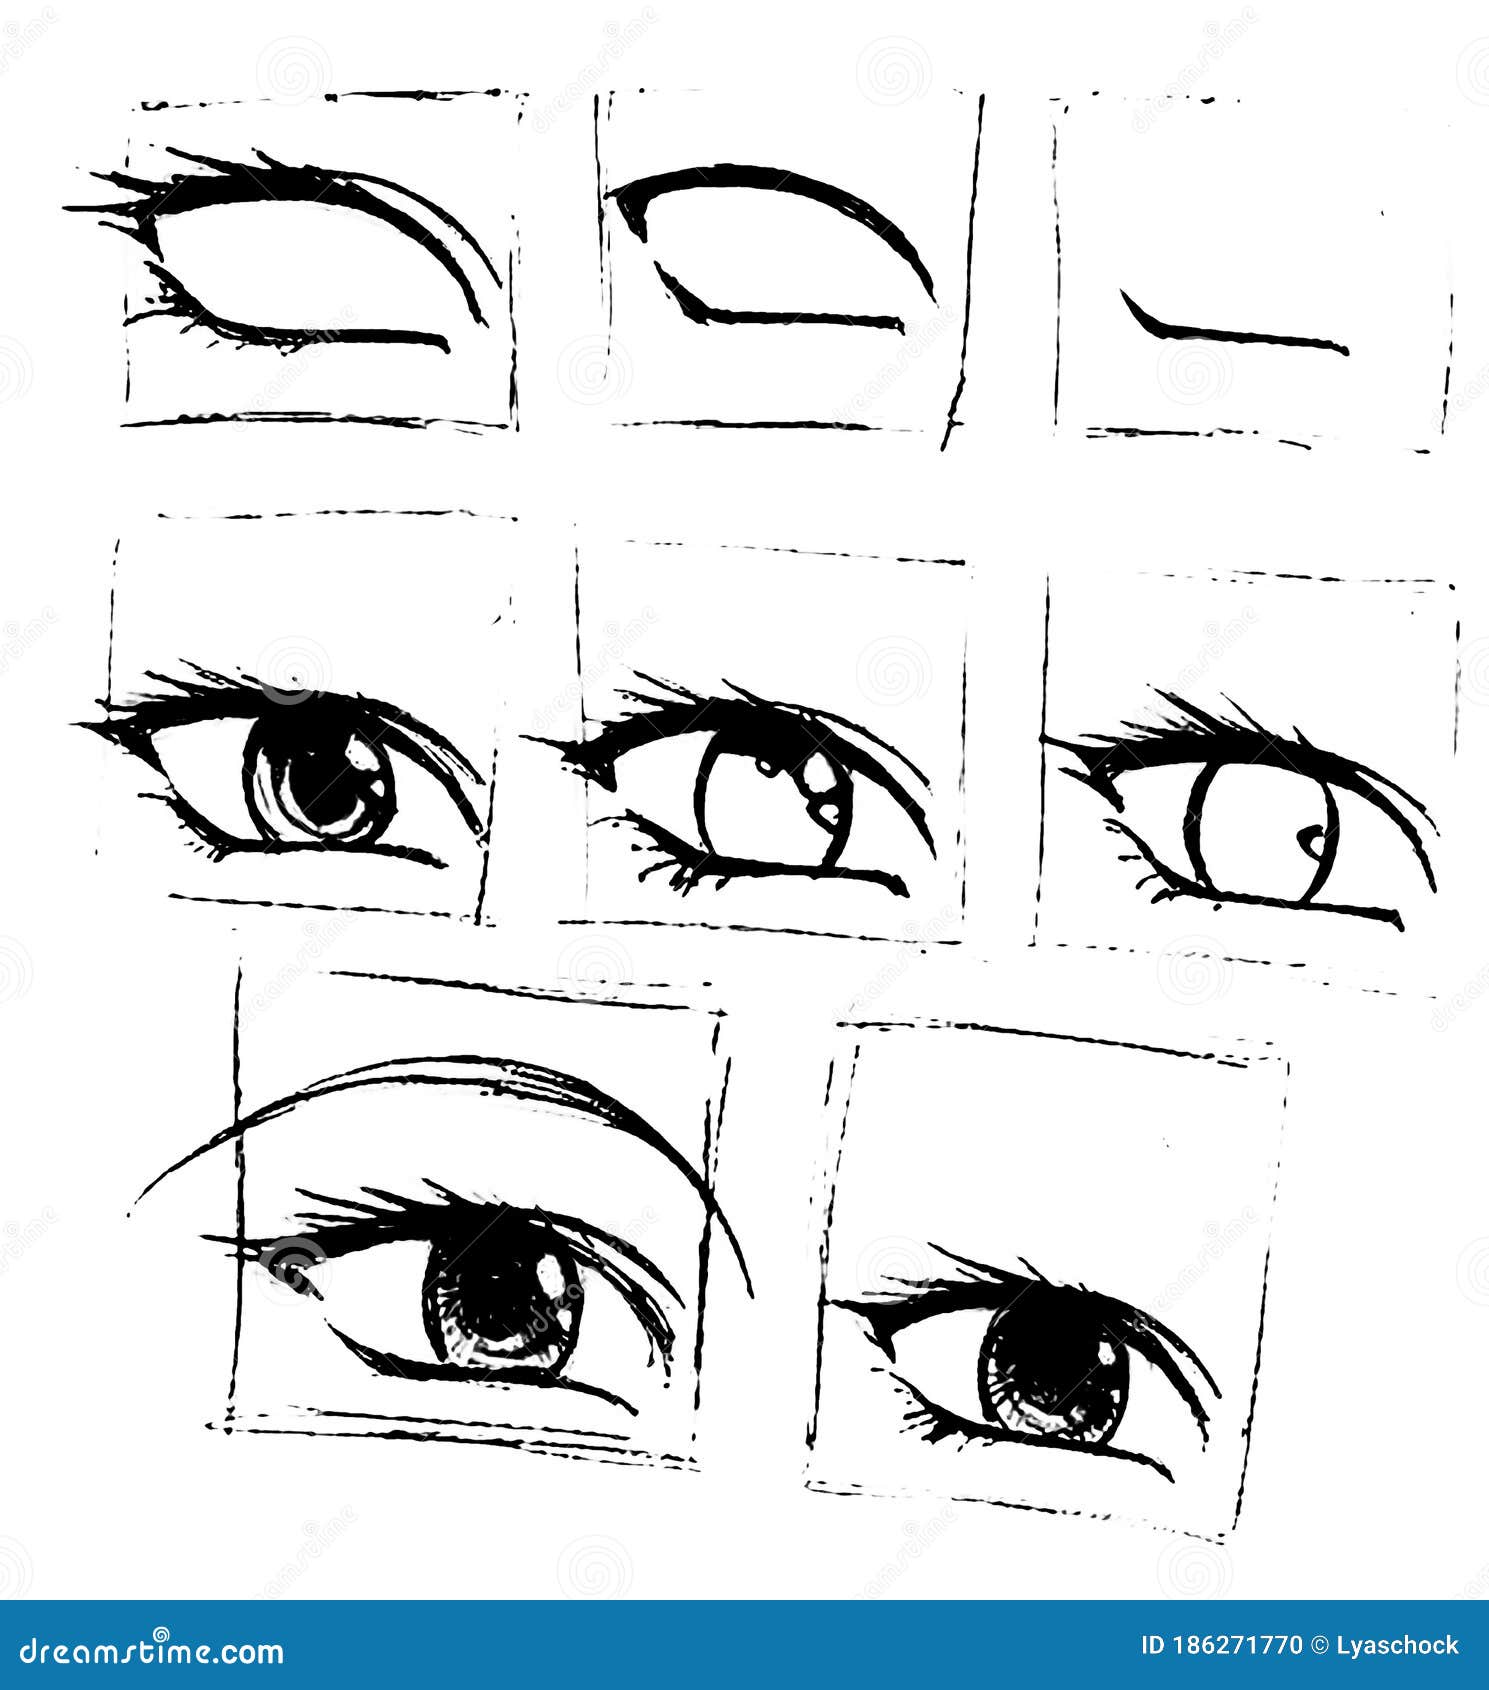 Tutorial De Desenhar Um Olho Humano. Olho No Estilo Anime. Cílios Femininos.  Foto Royalty Free, Gravuras, Imagens e Banco de fotografias. Image 147593491